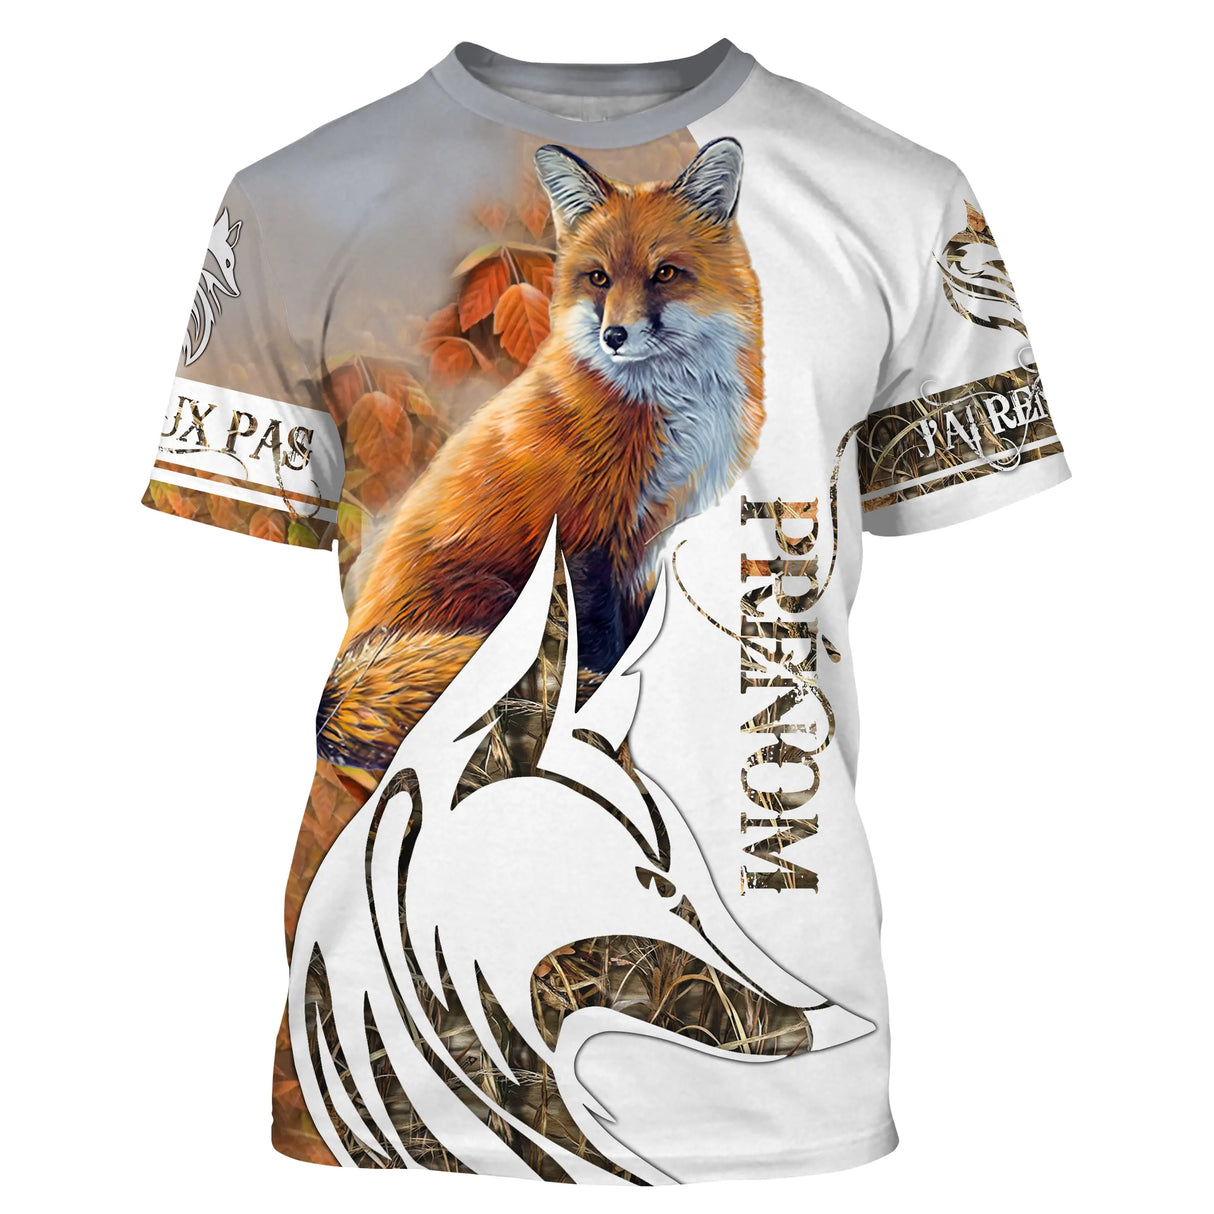 T-shirt, felpa da caccia alla volpe, regalo personalizzato per cacciatori, mimetica passione per la caccia - CT12112233